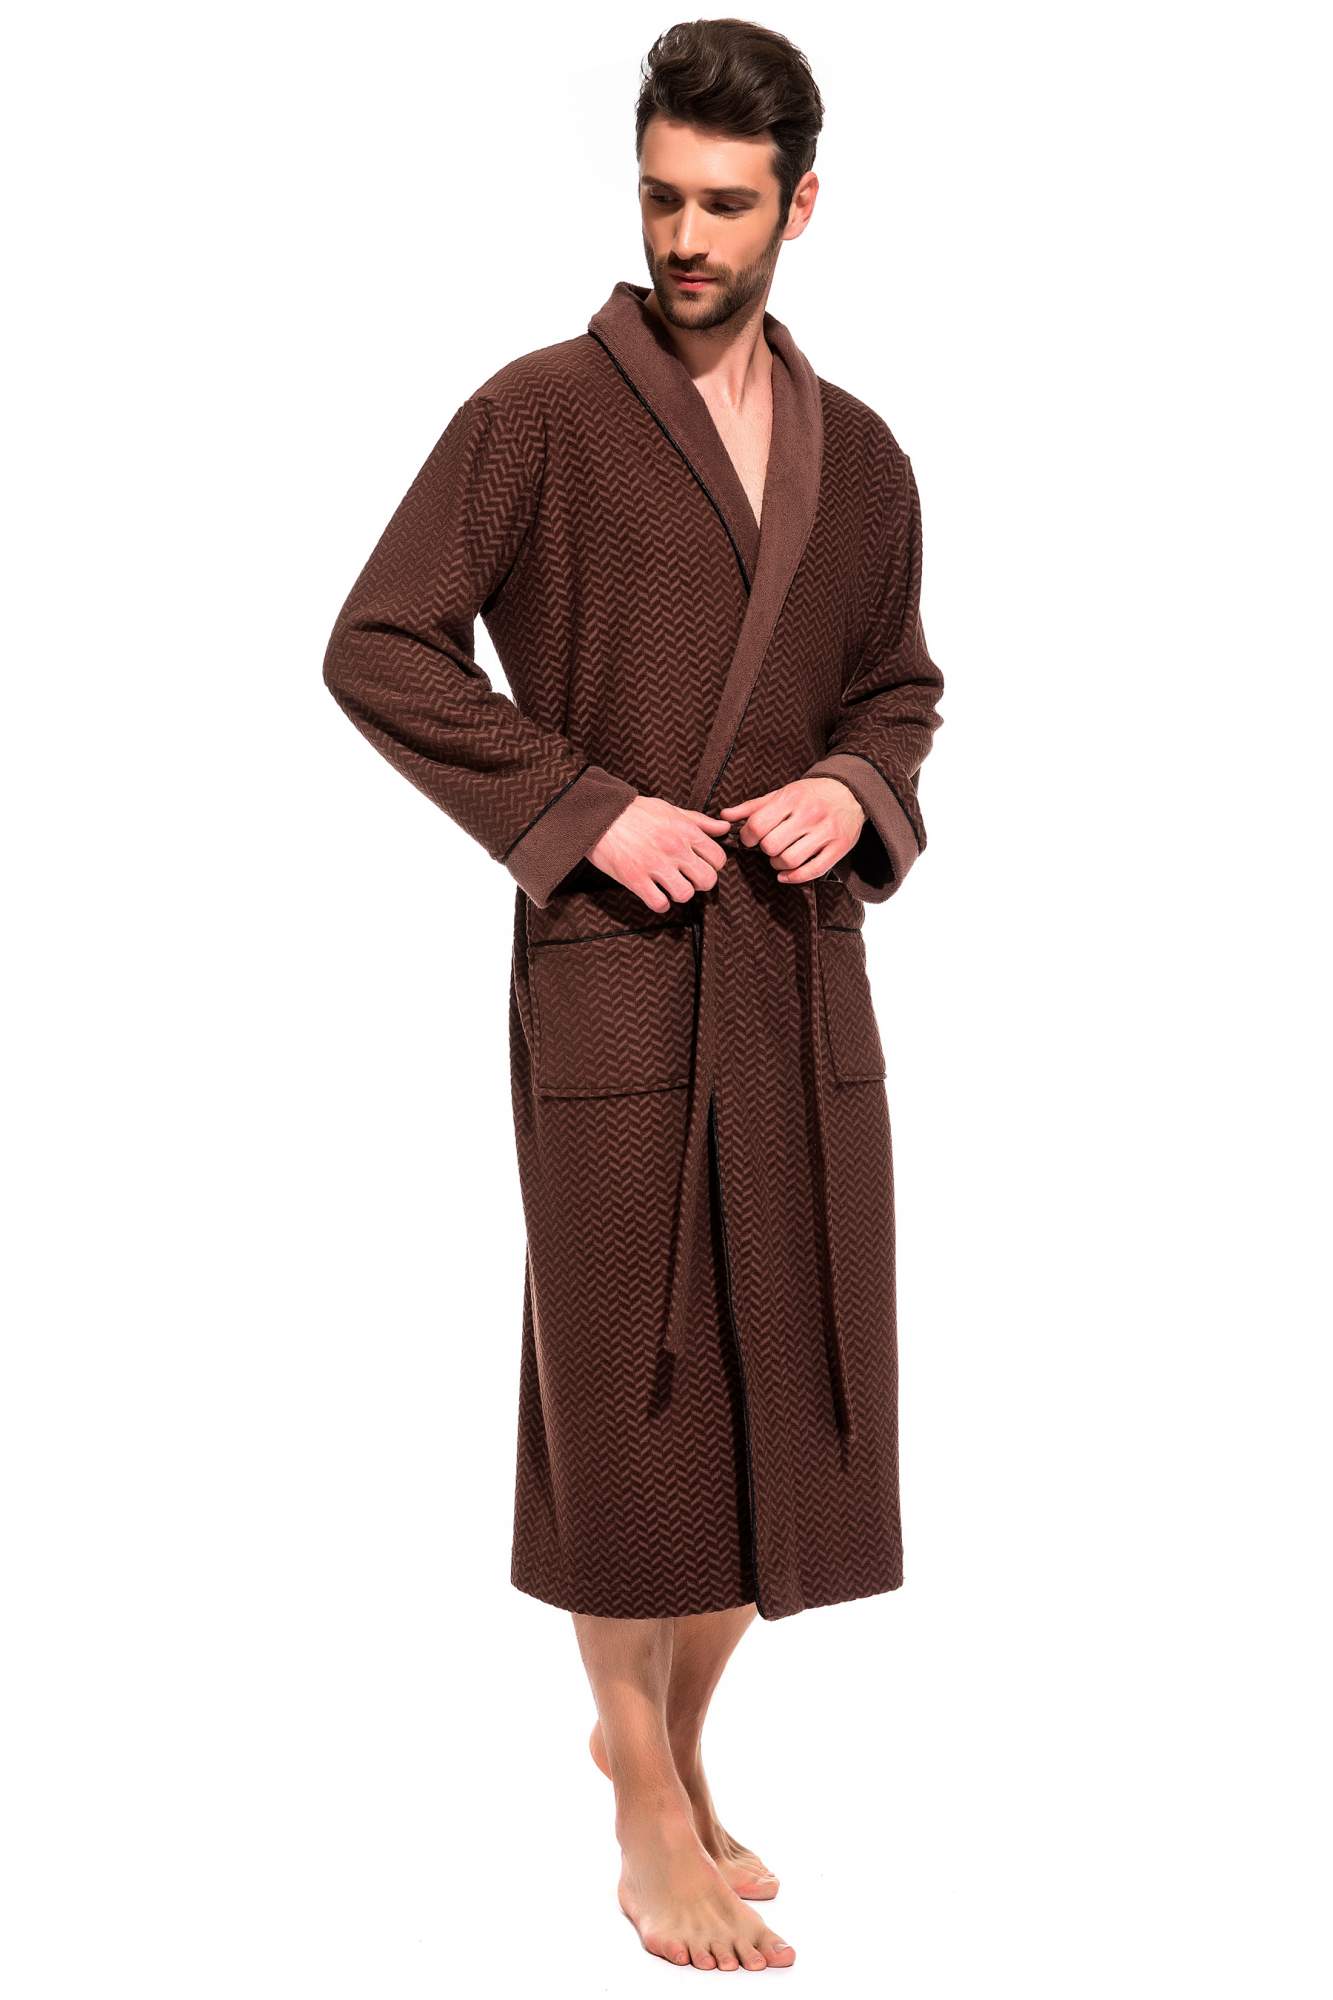 Мужской облегченный махровый халат из бамбука Peche Monnaie 419, шоколадный, L